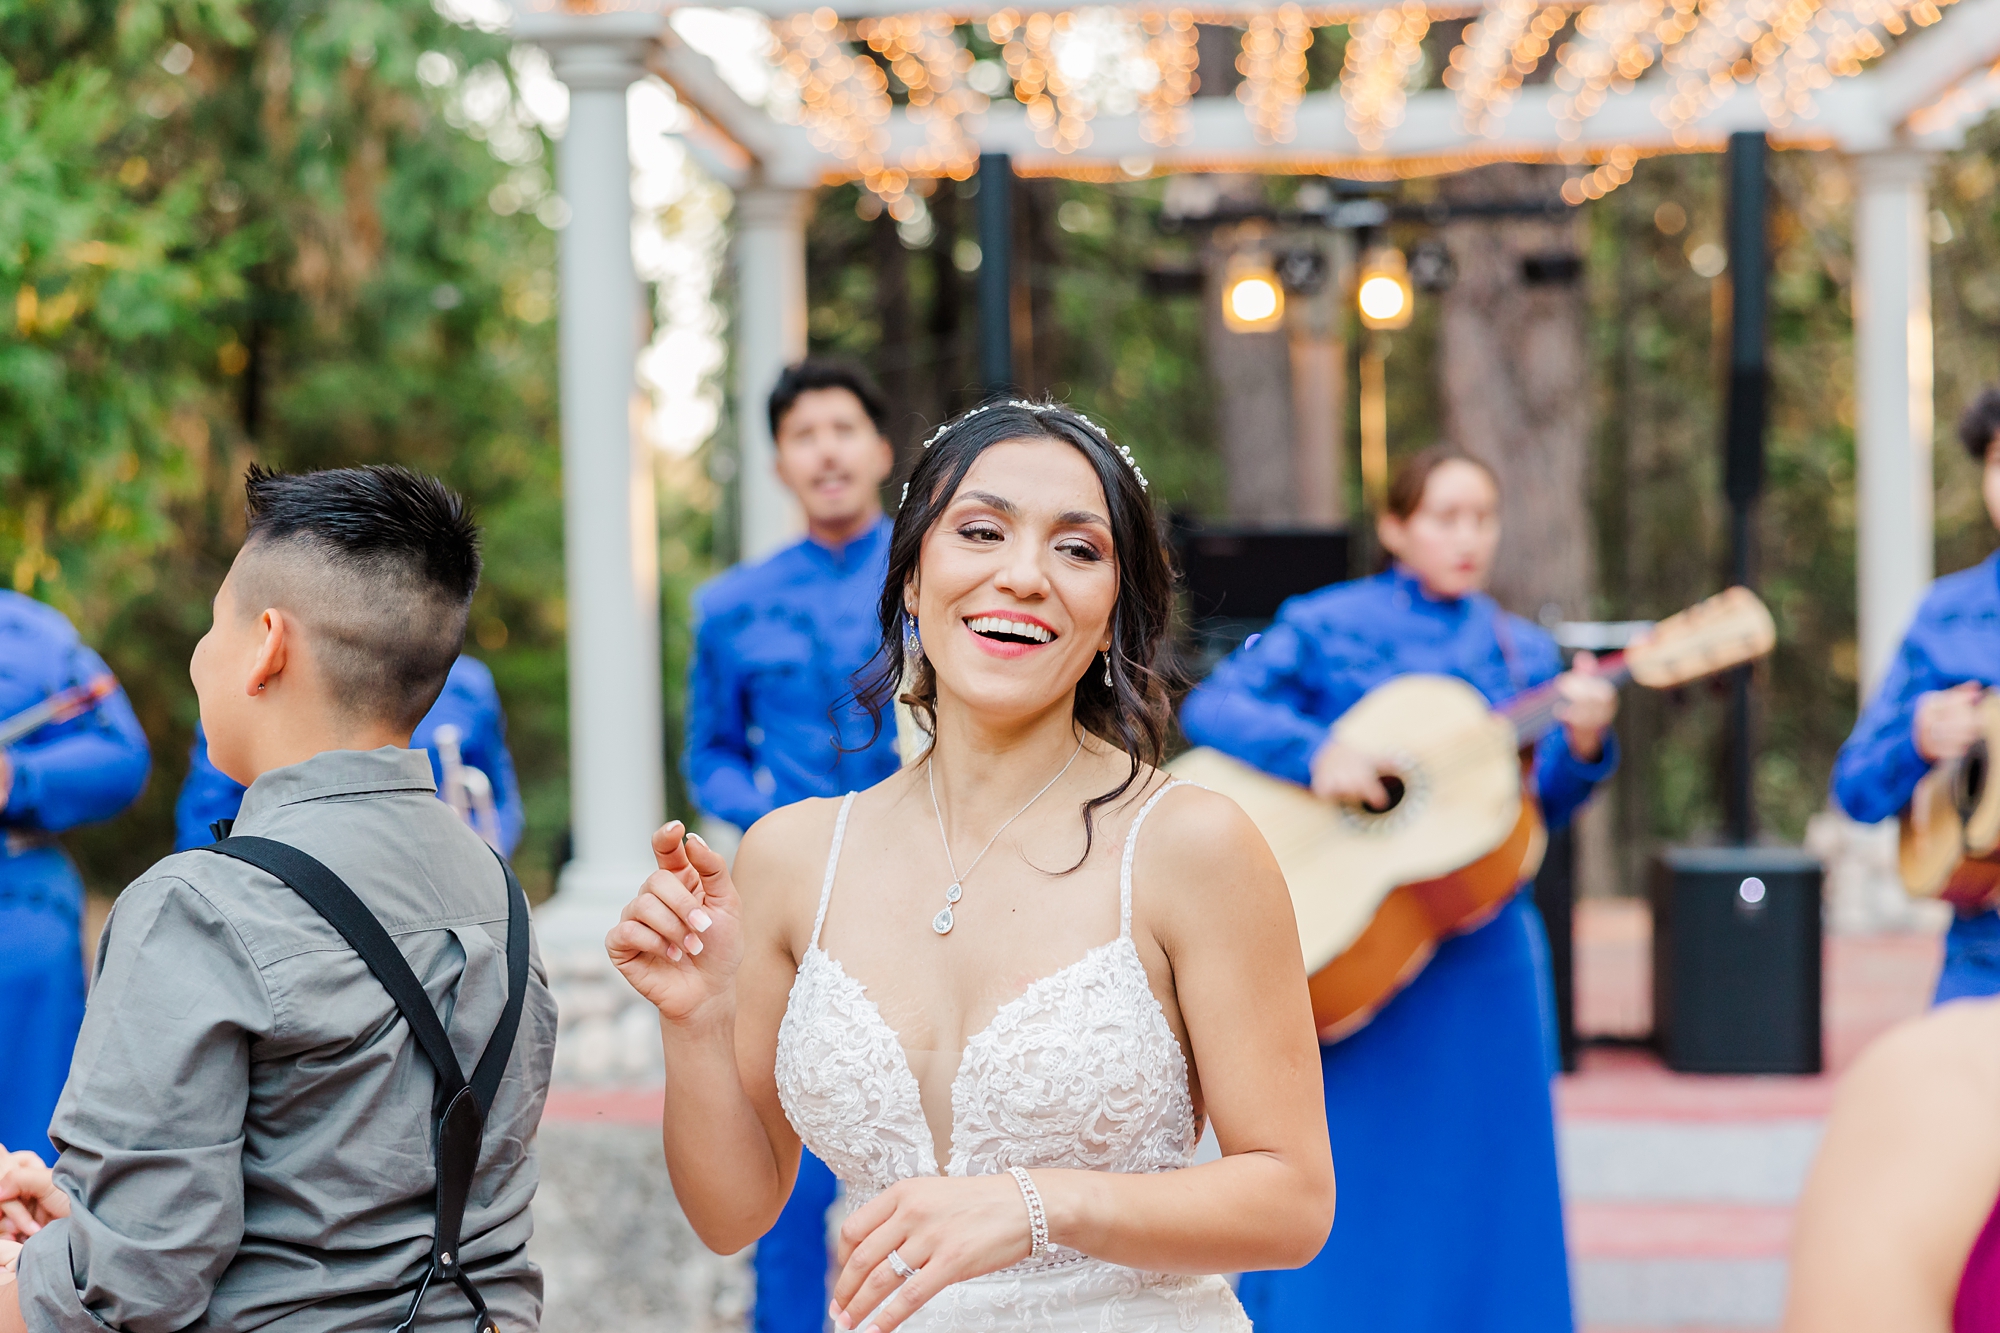 dancing to mariachi band at wedding